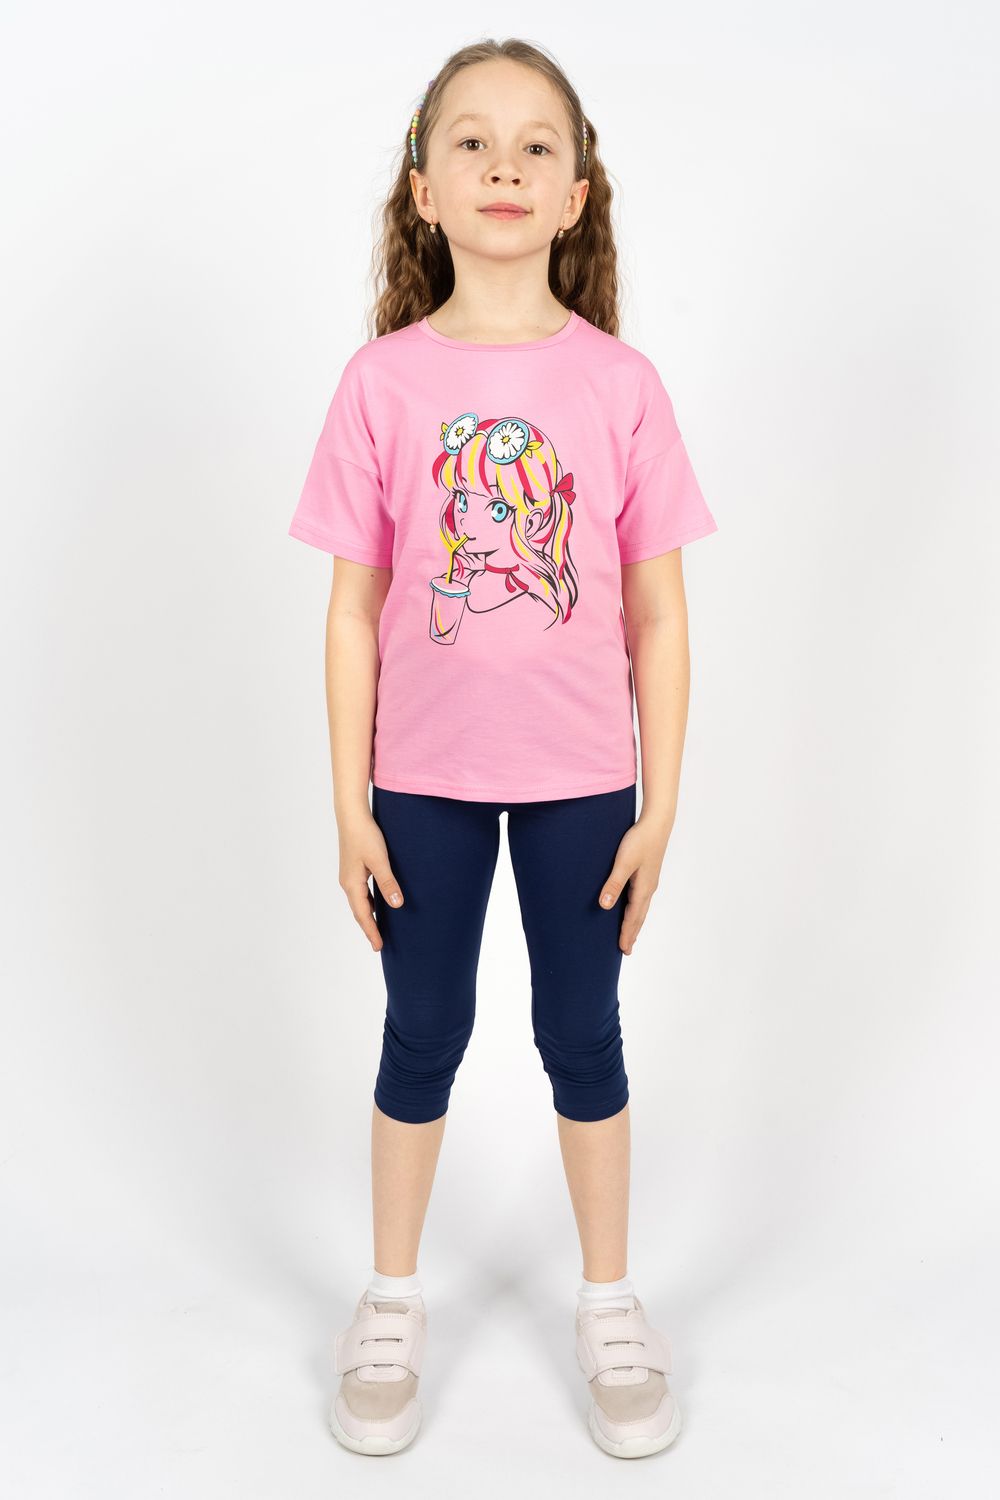 Комплект для девочки 41105 (футболка+ бриджи) - с.розовый/синий